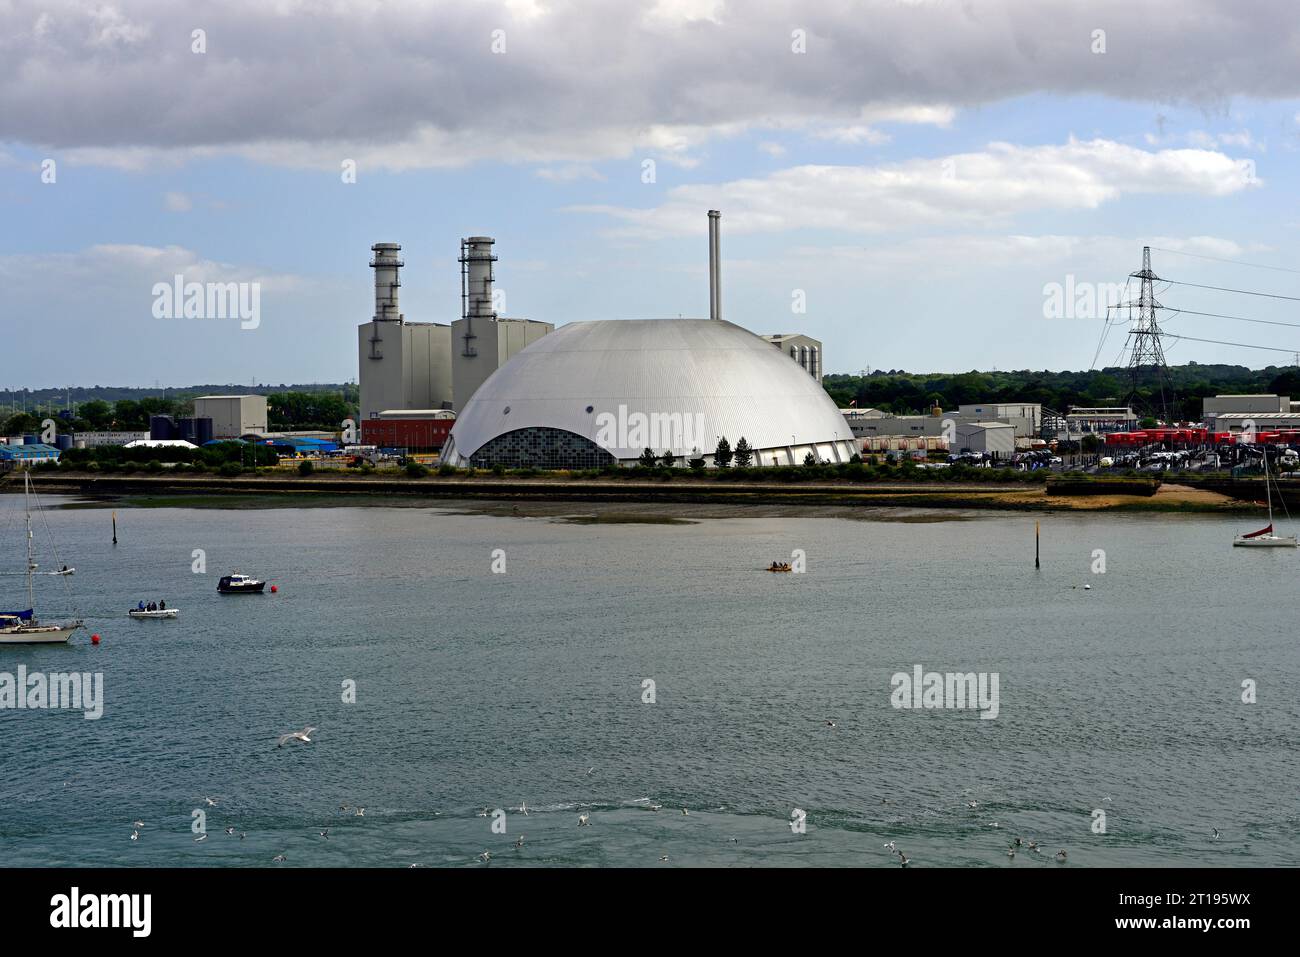 La cupola all'avanguardia del Marchwood Energy Recovery Facility è vista come un buon vantaggio da una nave in partenza da Southampton Docks. Foto Stock